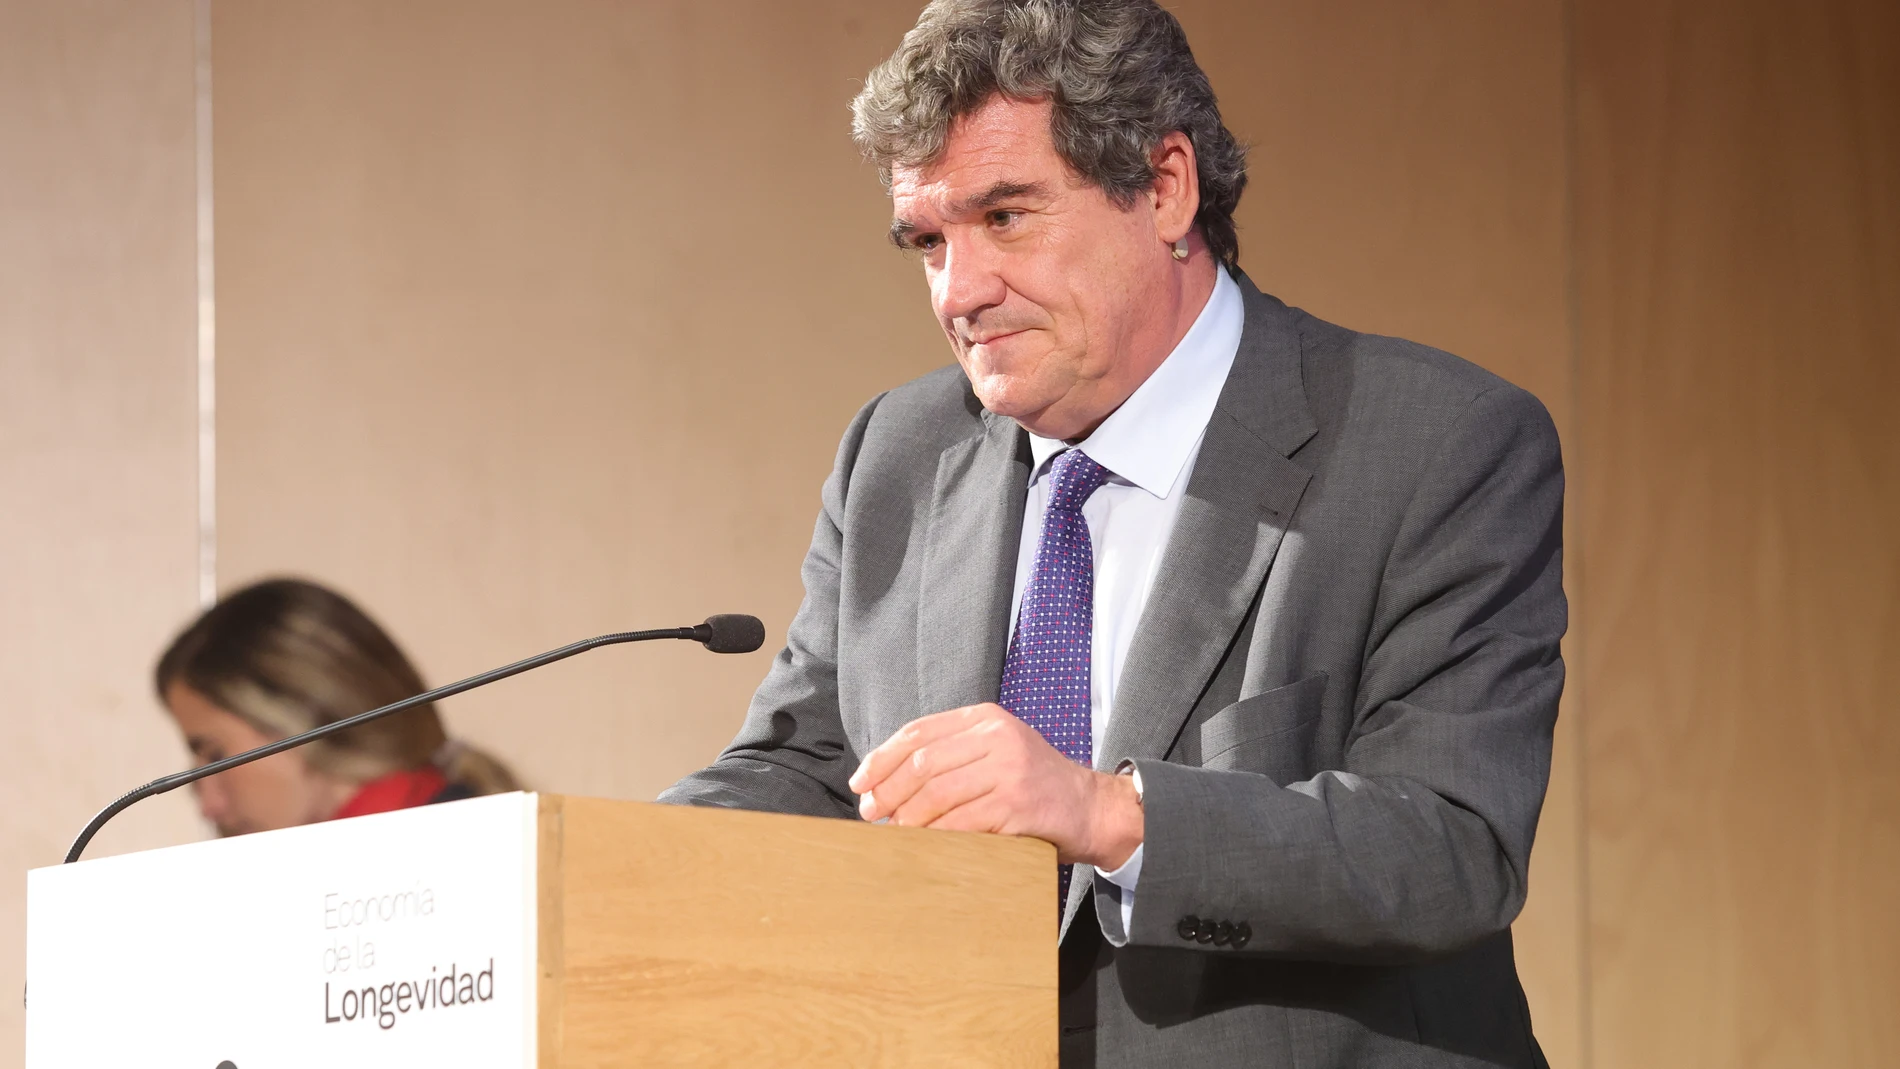 El ministro de Inclusión, Seguridad Social y Migraciones, José Luis Escrivá, en el Congreso de Economía de la Longevidad, en Salamanca